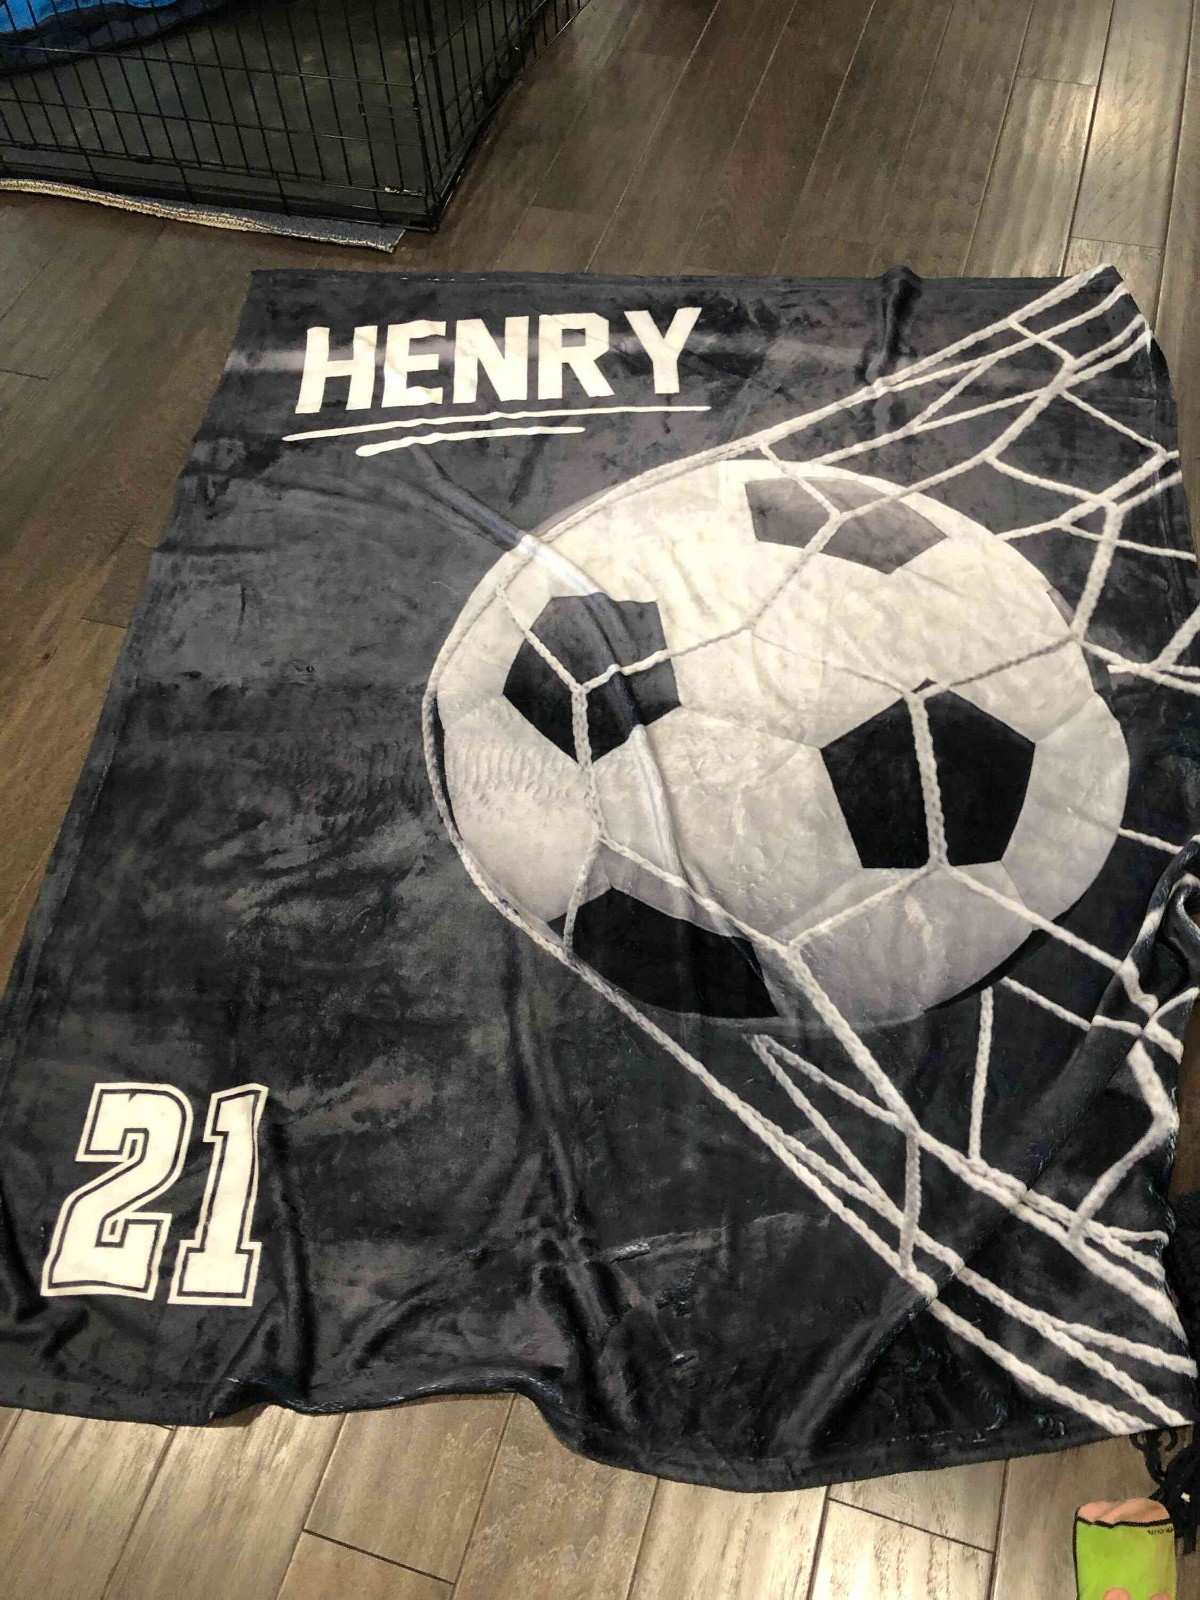 Soccer Blanket Ball through Goal -Personalized  Gift for Soccer Players Fan Gear Soccer Mom Team Gift Senior